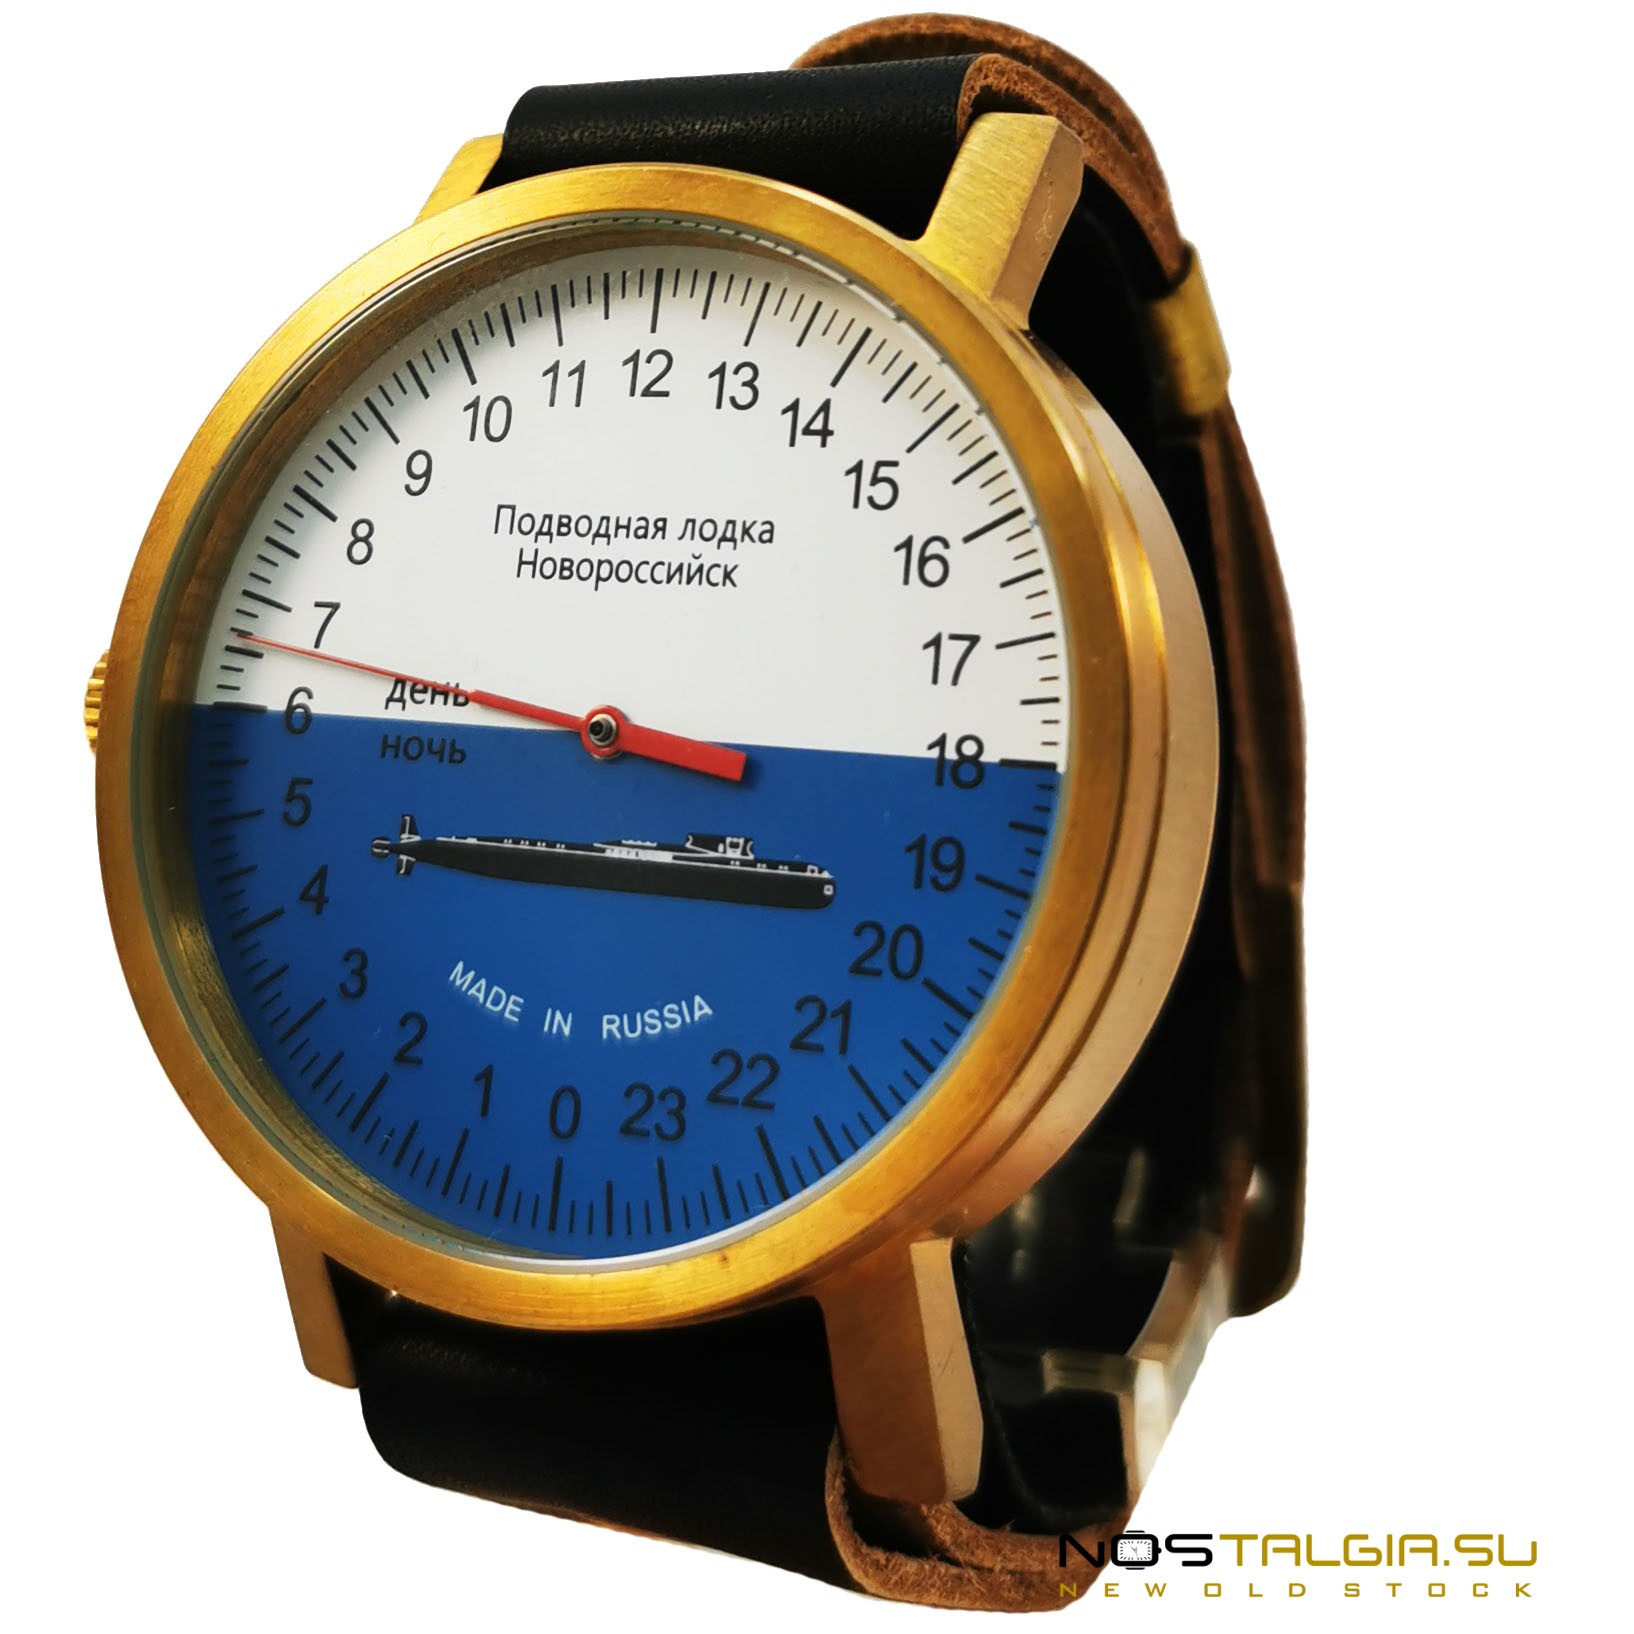 一个非常罕见的手表"Umnyashov"-潜艇新罗西斯克，防水自绕组，新 